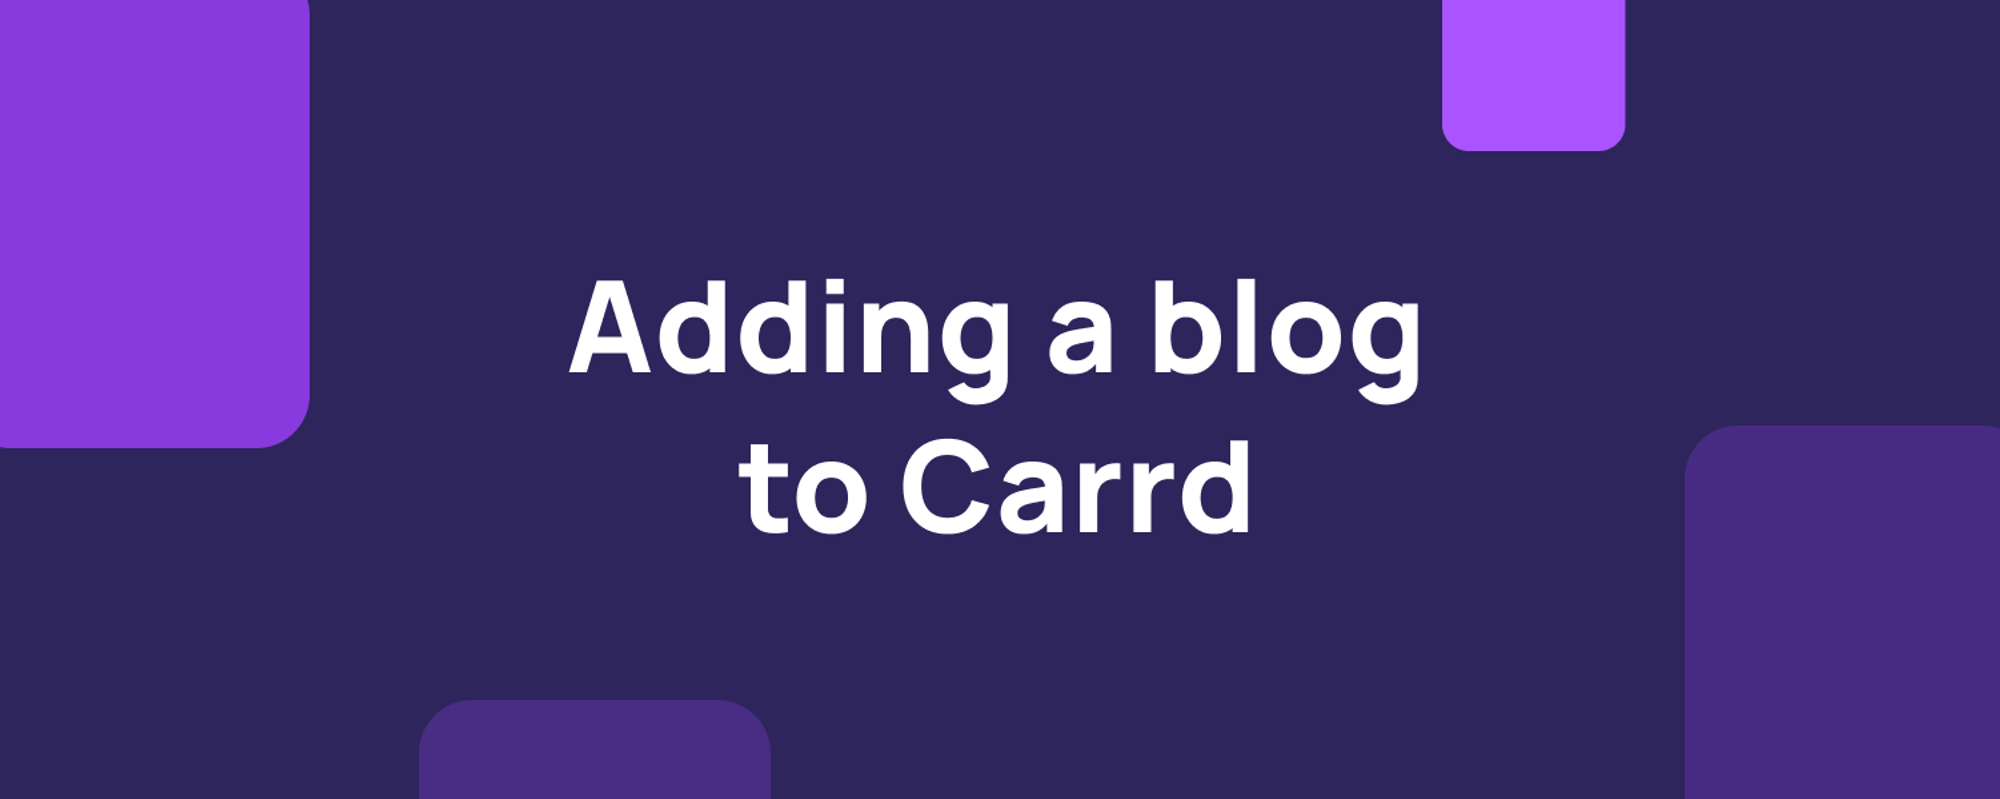 Adding a blog to Carrd